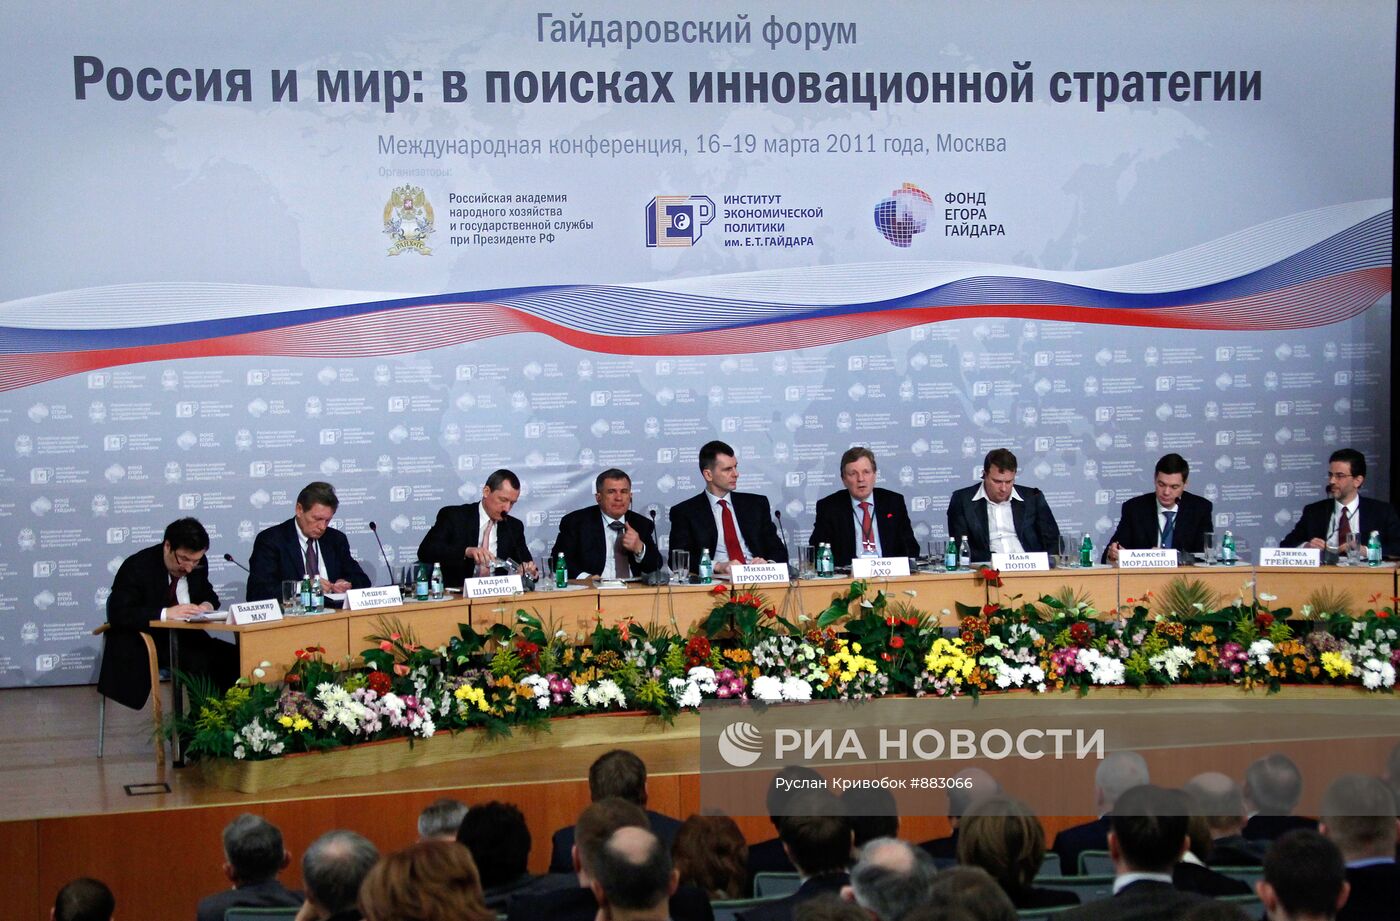 Конференция "Россия и мир: в поисках инновационной стратегии"